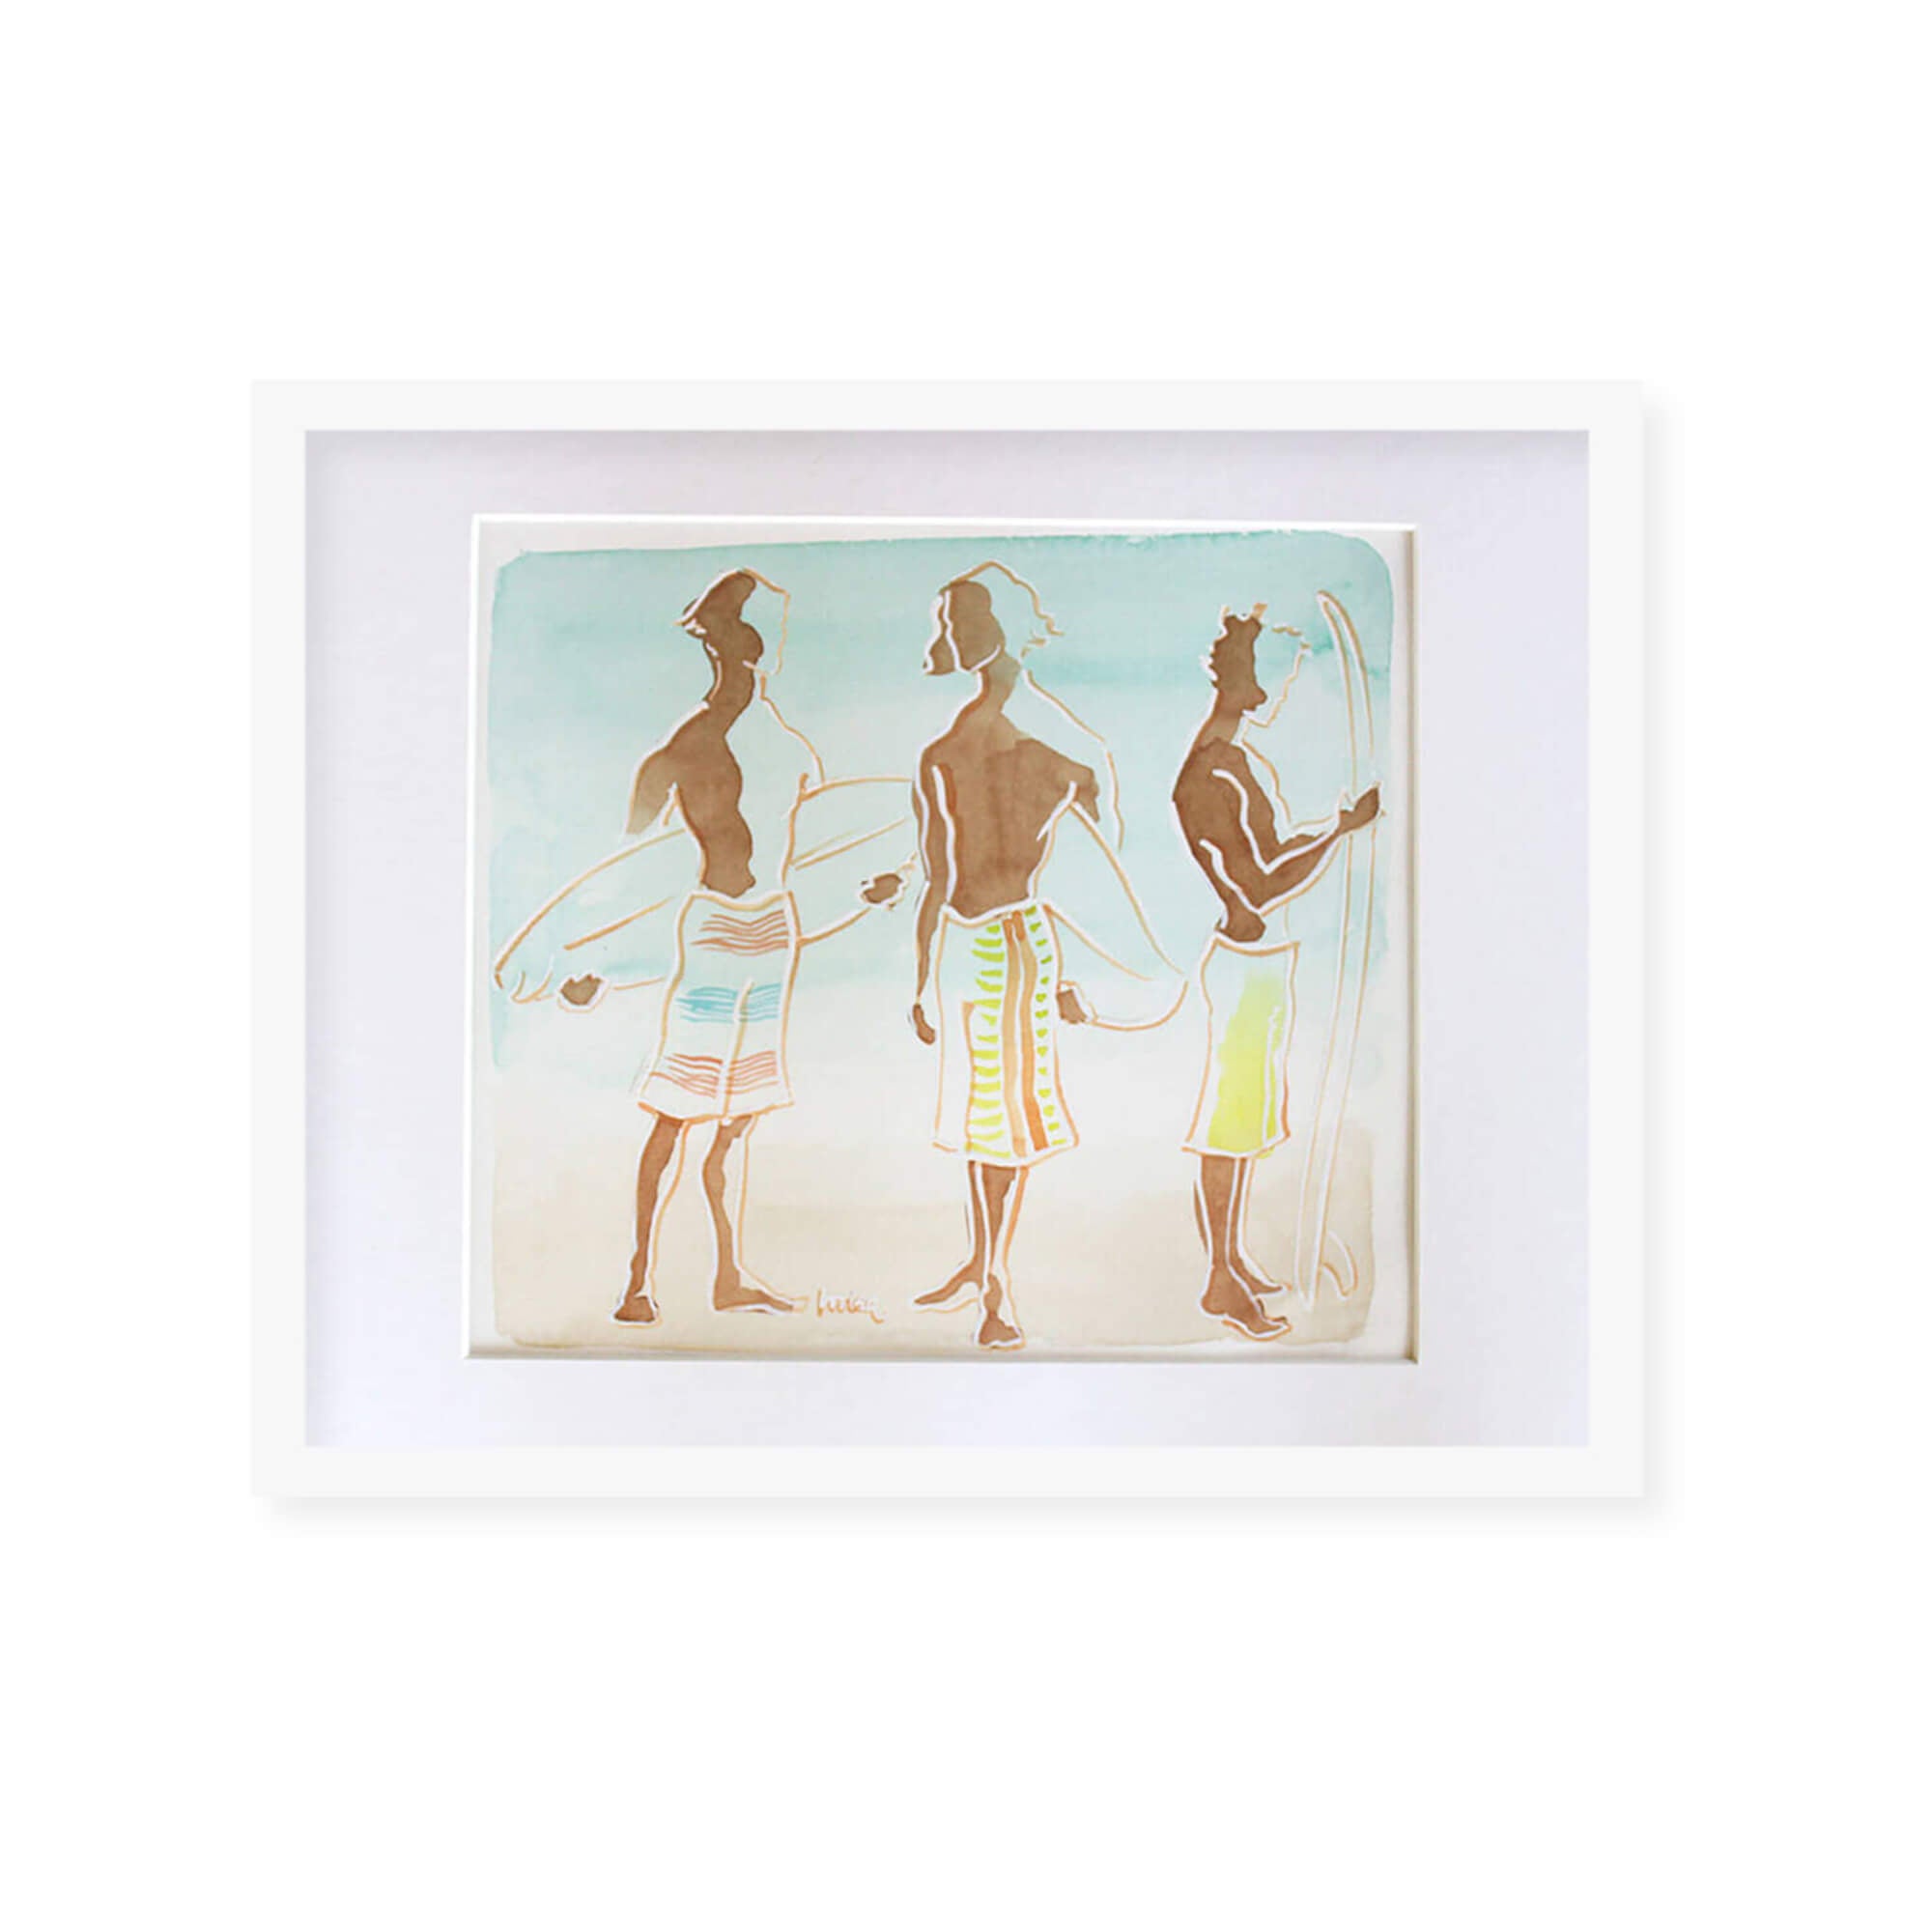 Framed original watercolor artwork of three men surfer by Hawaii artist Lovisa Oliv